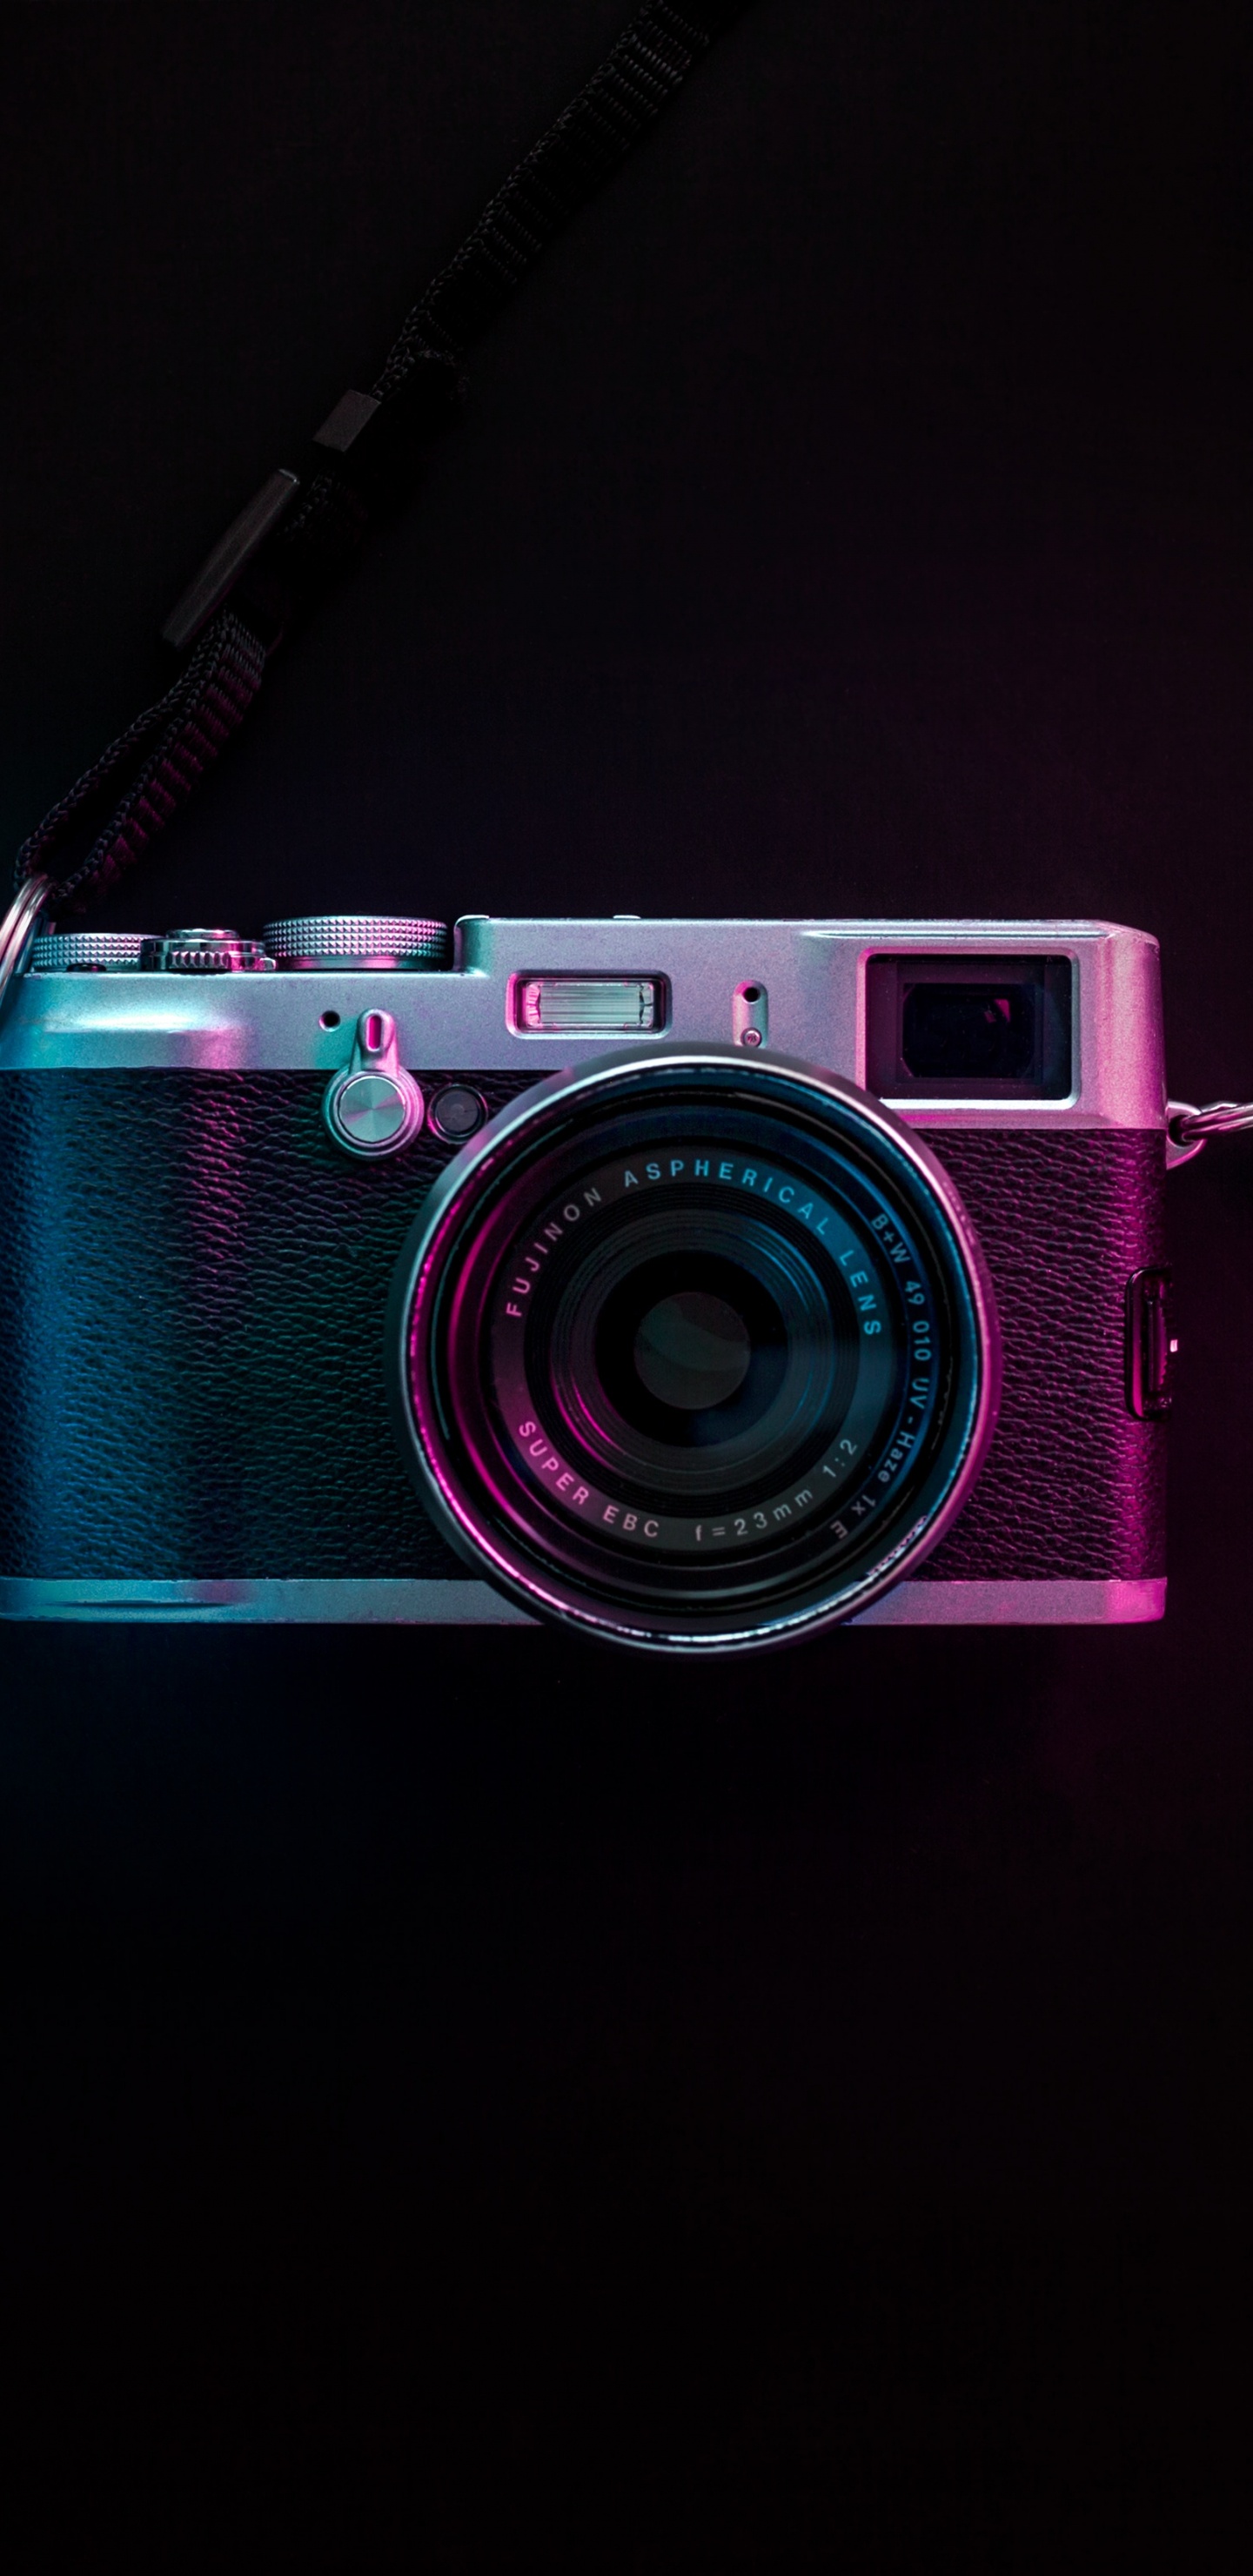 粉红色, 光学照相机, 拍摄像头, 光, 数字照相机 壁纸 1440x2960 允许